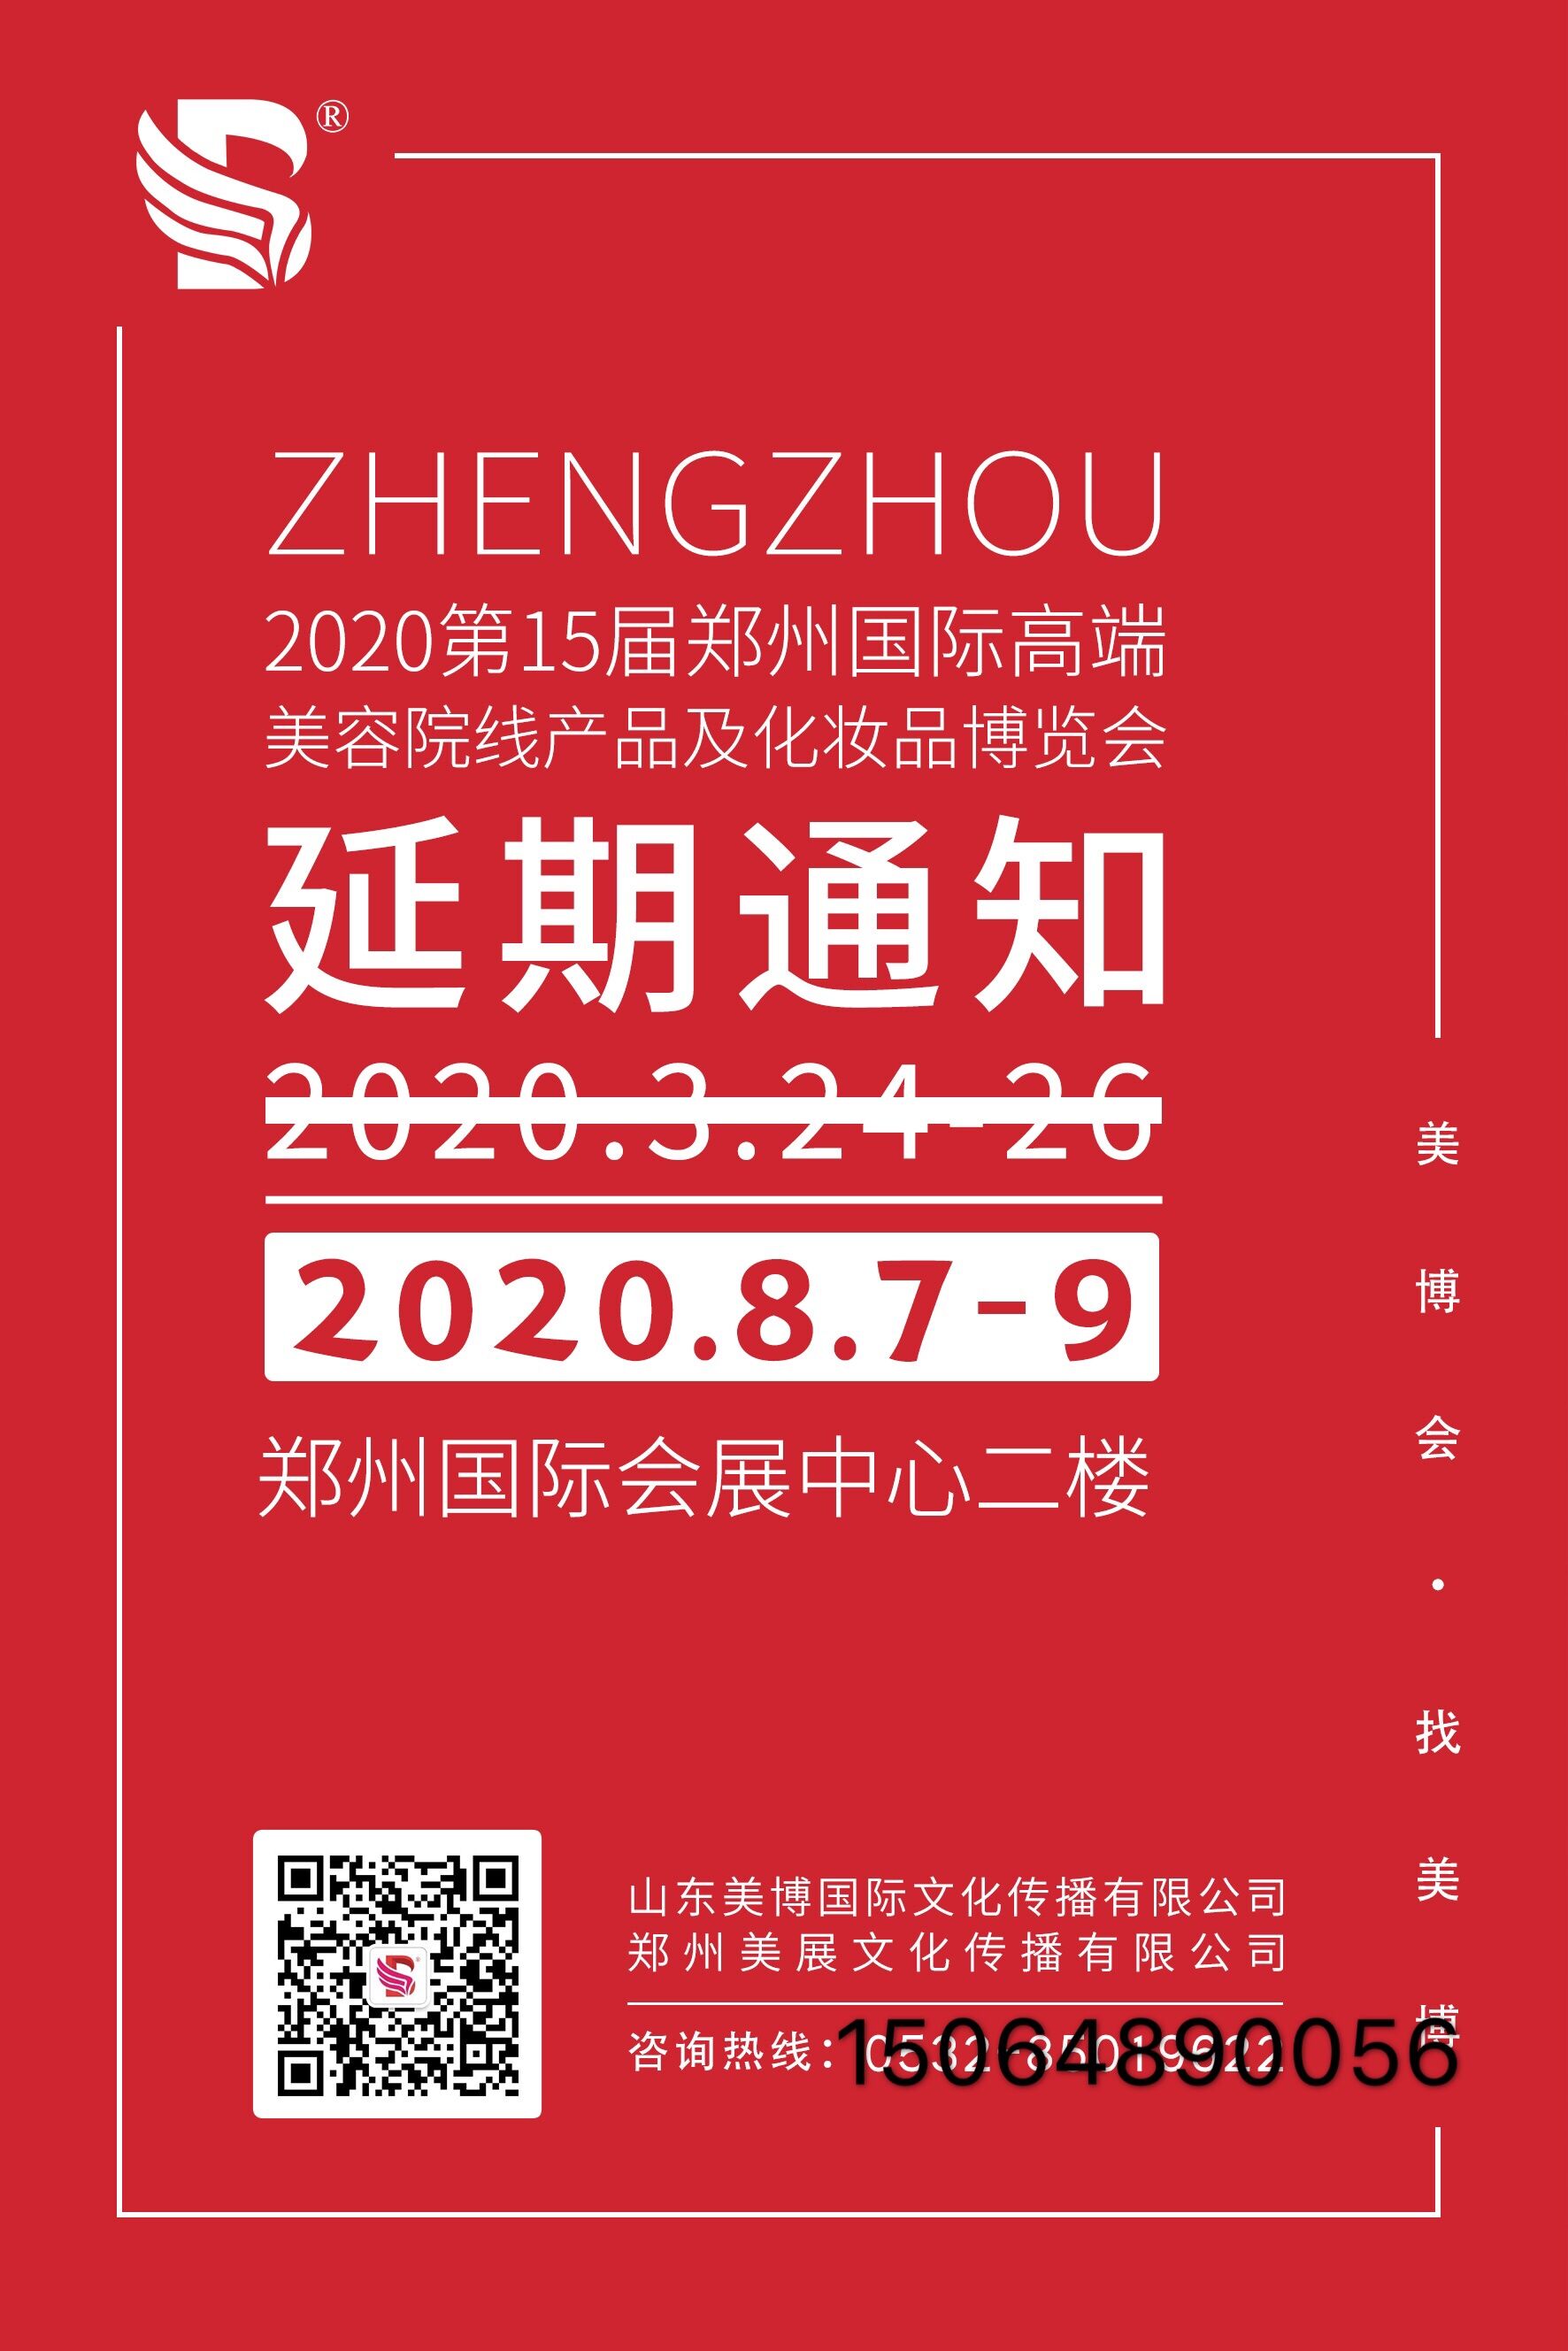 2020年郑州CBd美容院线日化线化妆品博览会8.7至9